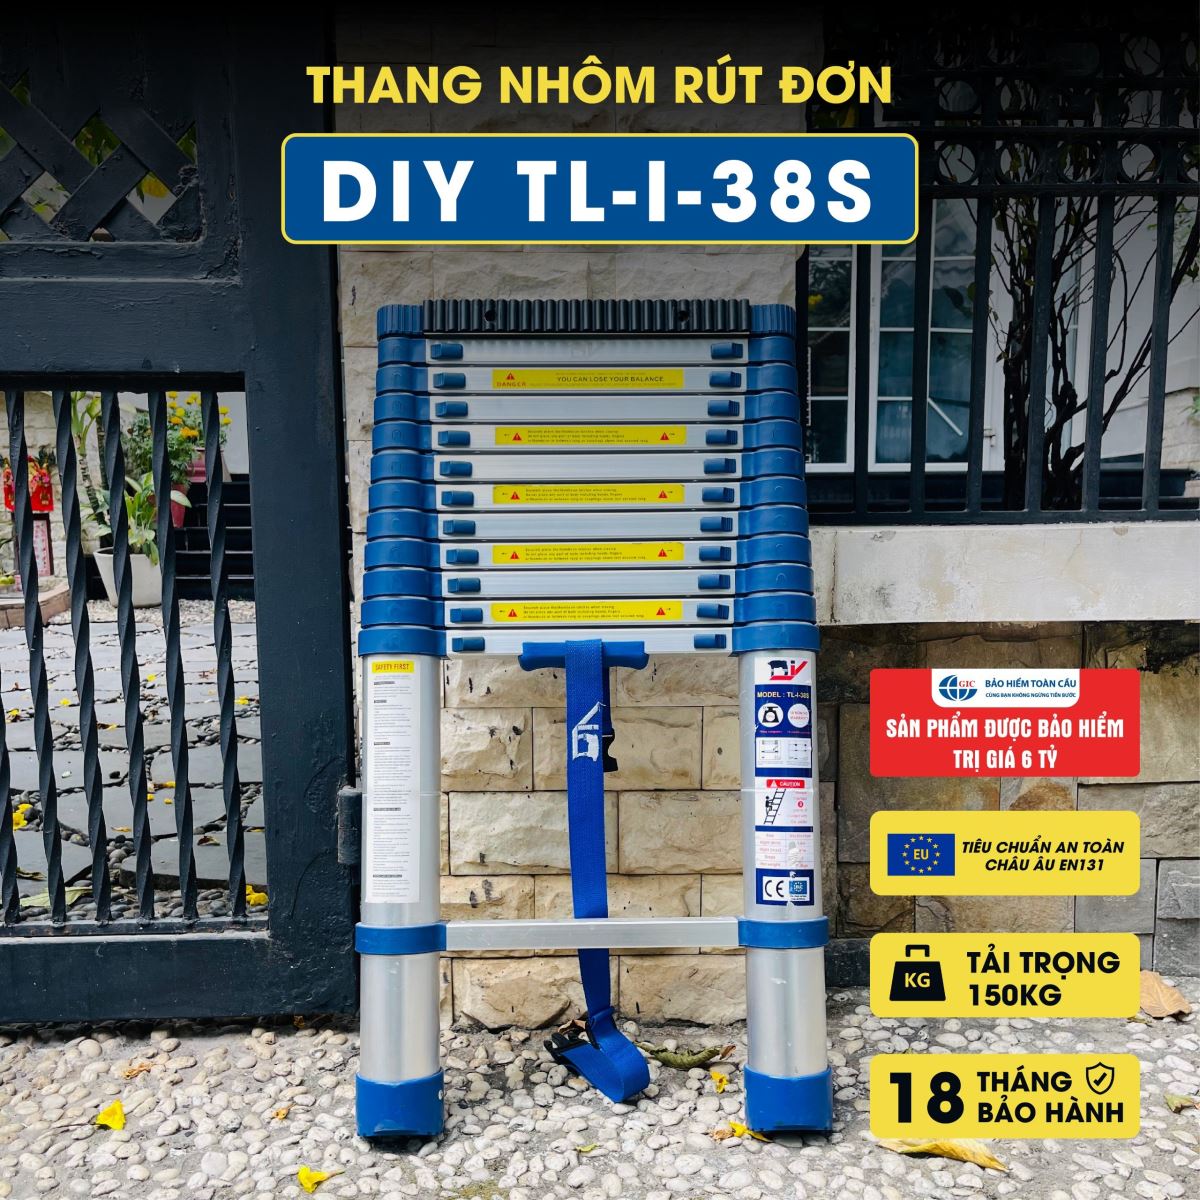 Thang nhôm rút đơn DIY TL-I-38S